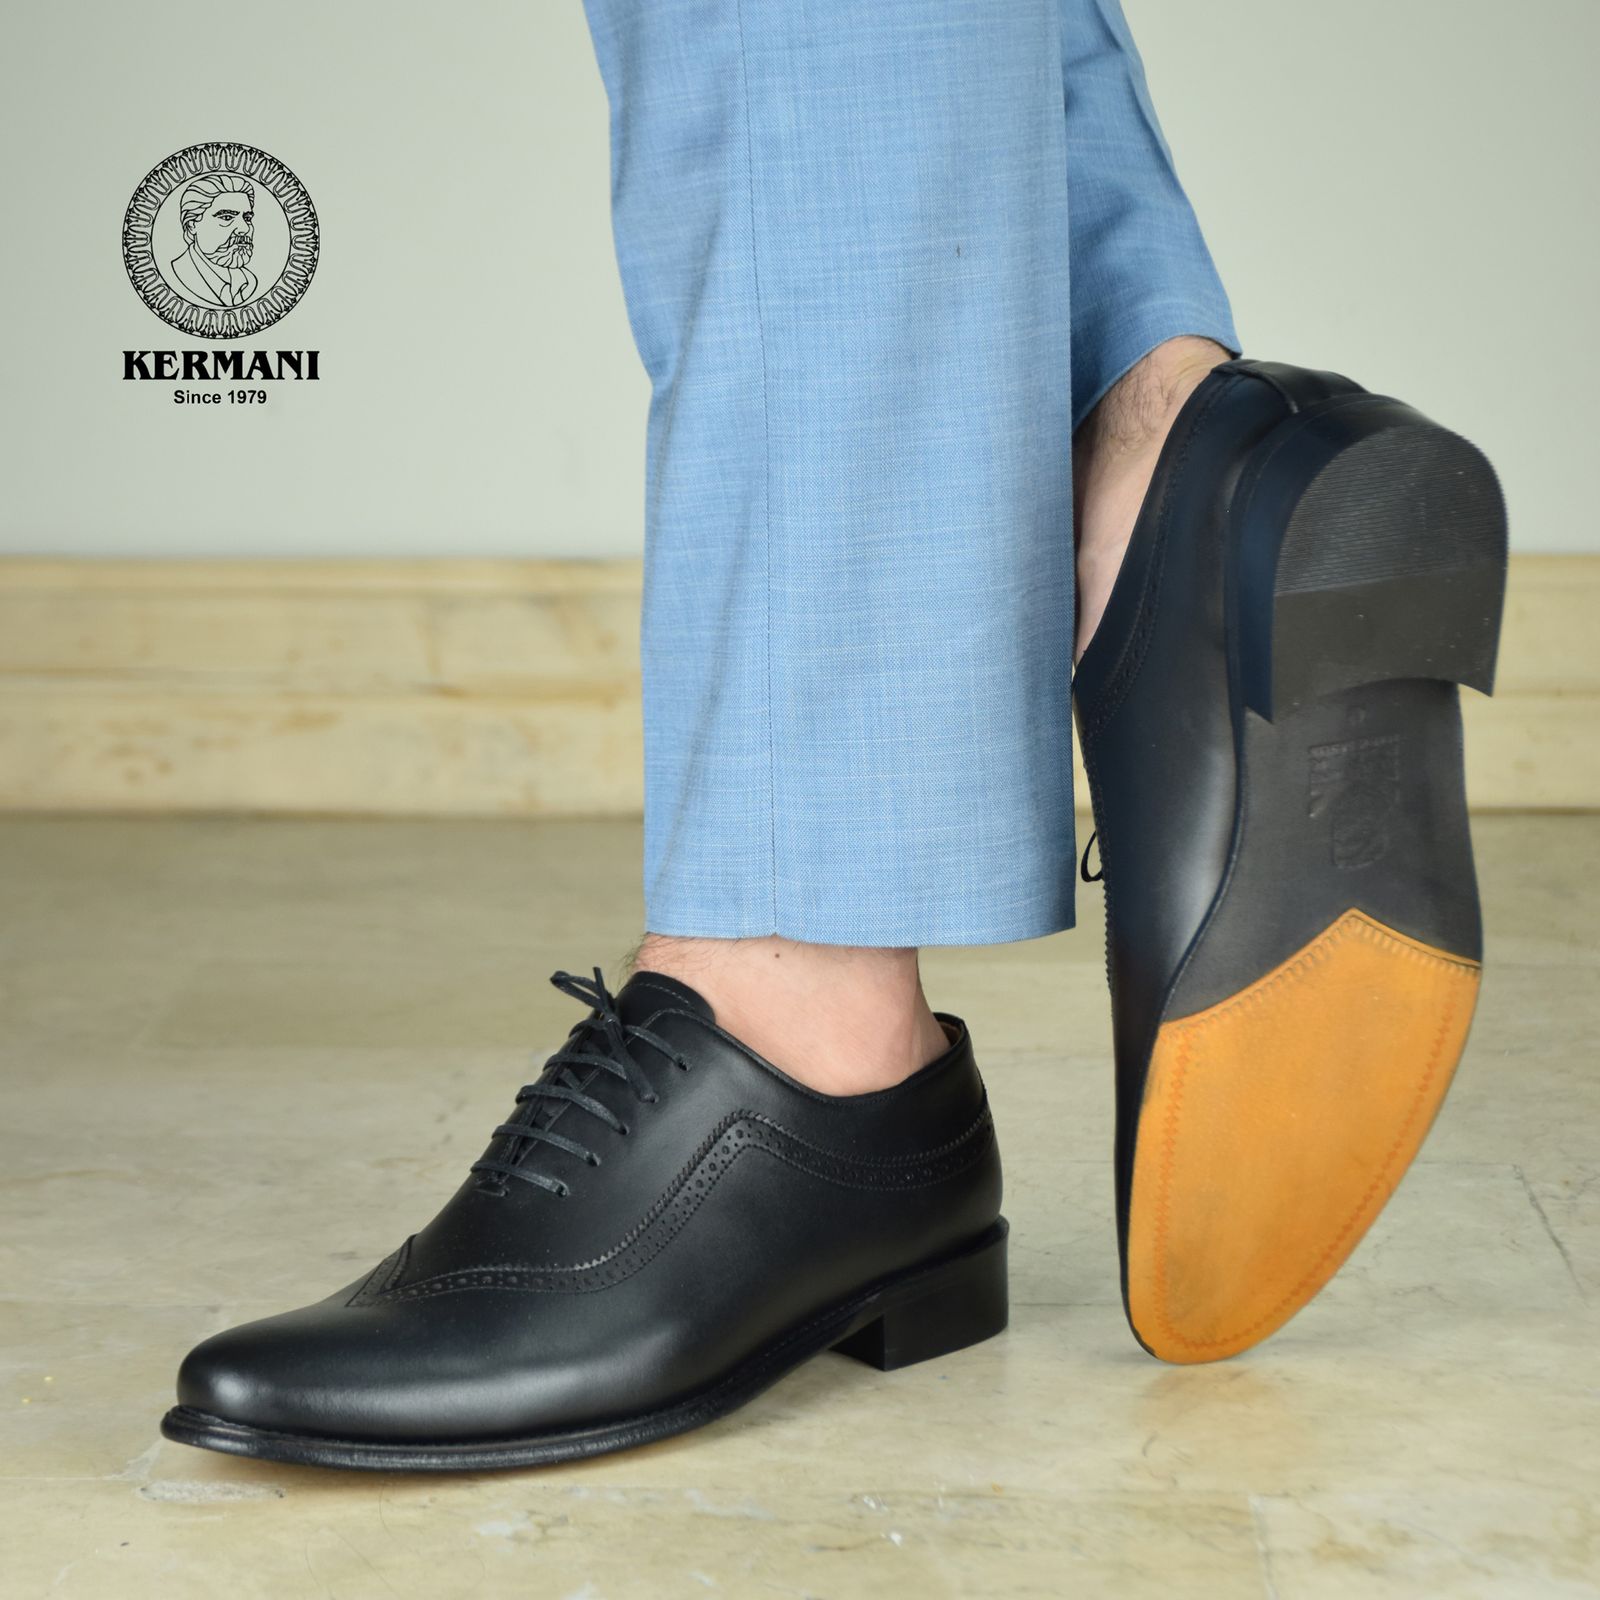 کفش مردانه کرمانی مدل تمام چرم دستدوز طبیعی کد 1072 رنگ مشکی -  - 3